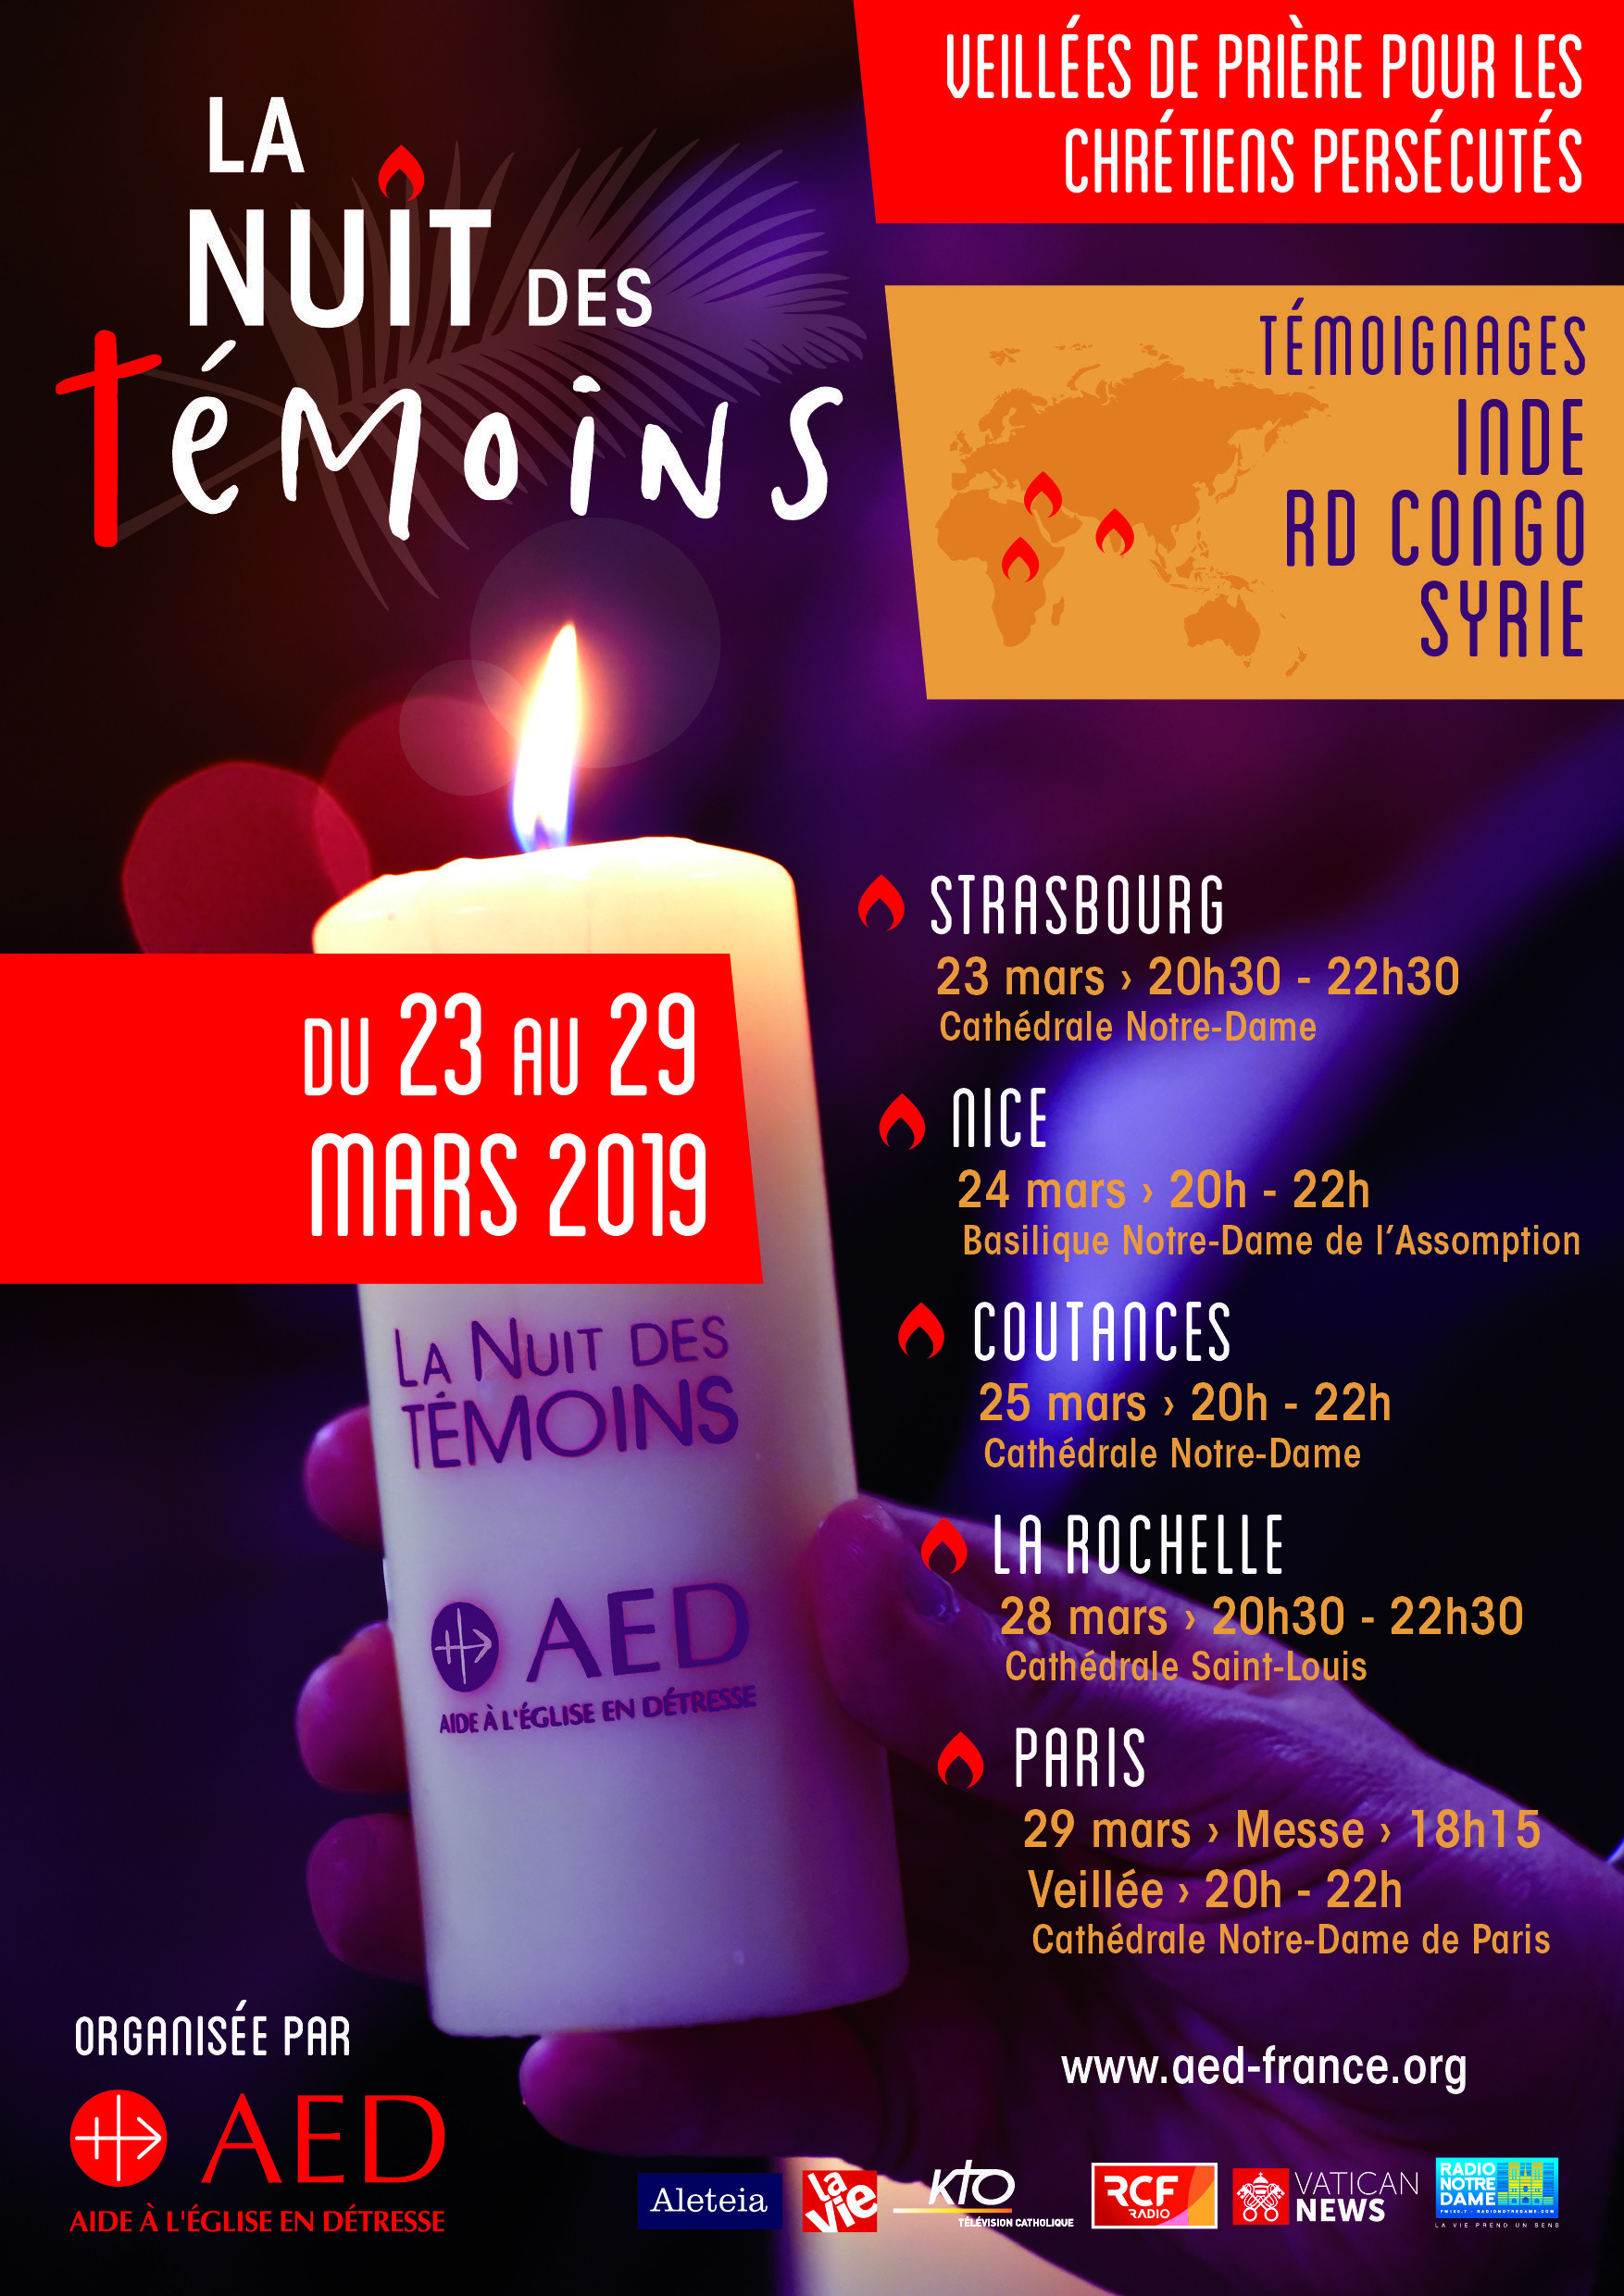 11e Nuit des Témoins de l’AED – du 23 au 29 mars 2019 en France